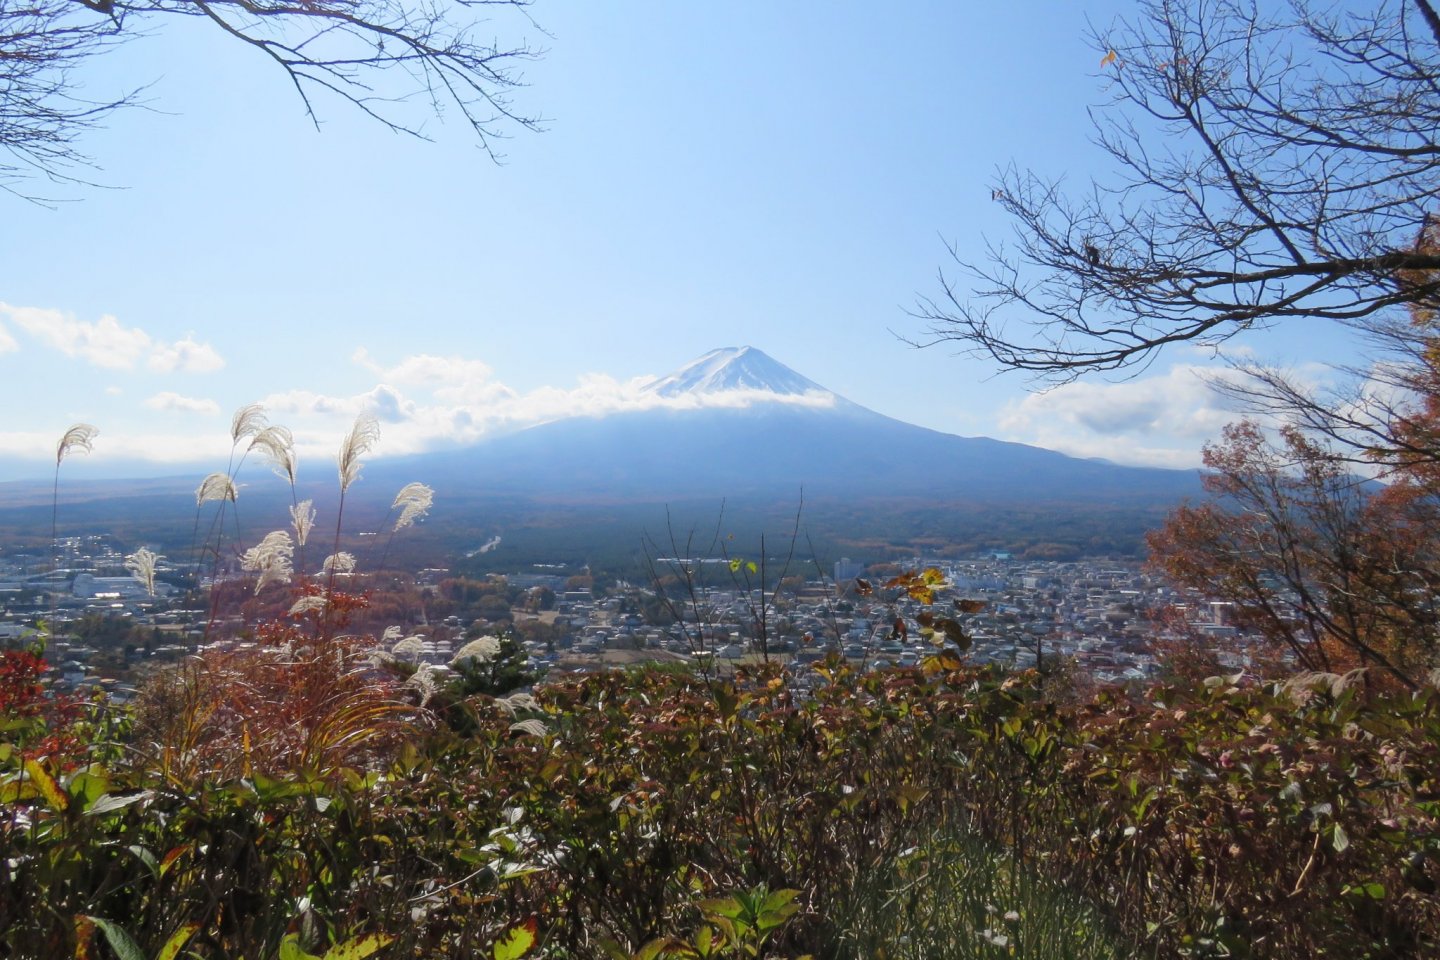 Mt. Fuji from Mt. Kachi trail